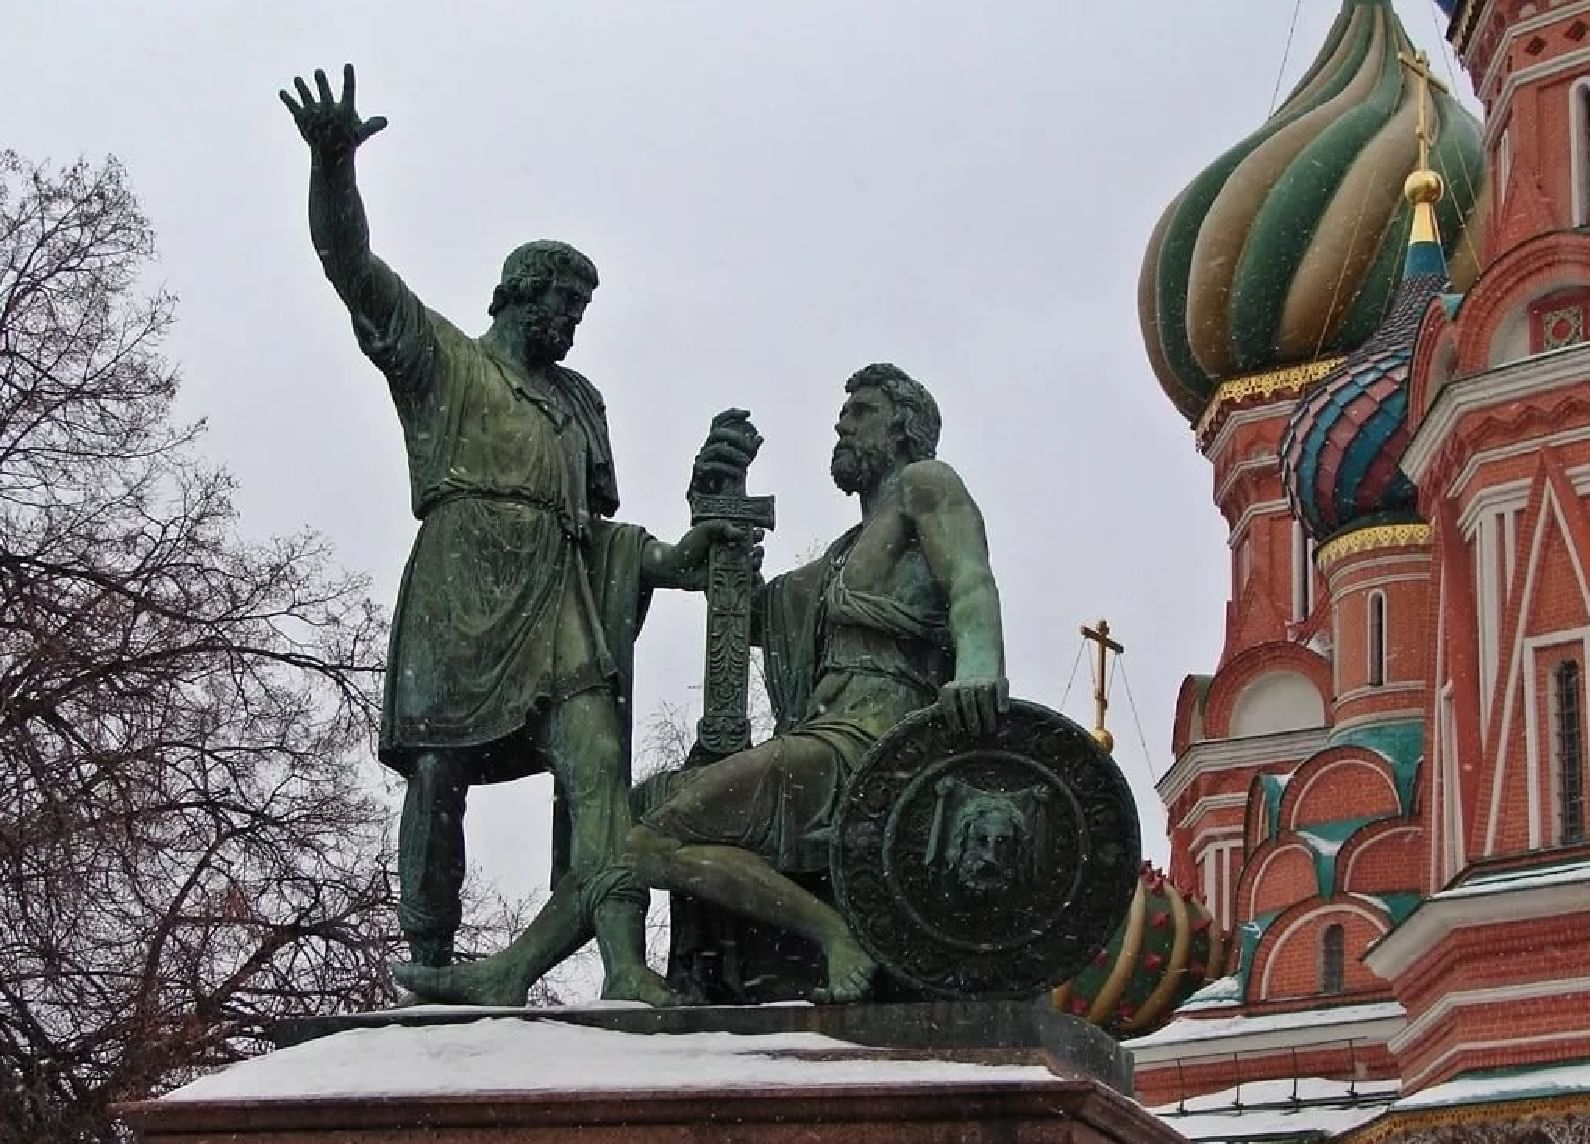 Памятник Кузьме Минину и Дмитрию Пожарскому